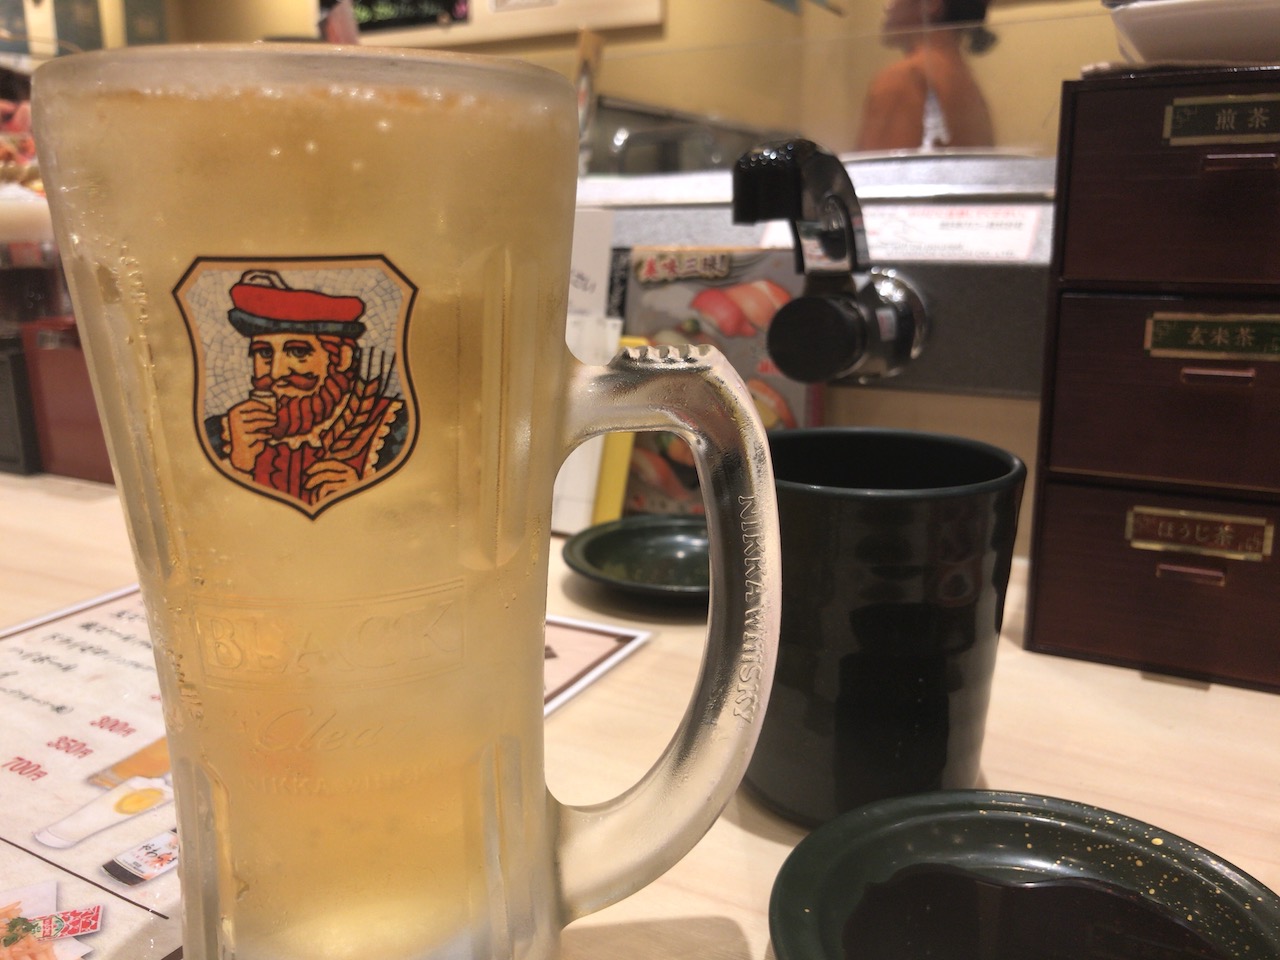 姫路駅前の回転寿司「力丸」はひとり飲みに適しているのか試してきた